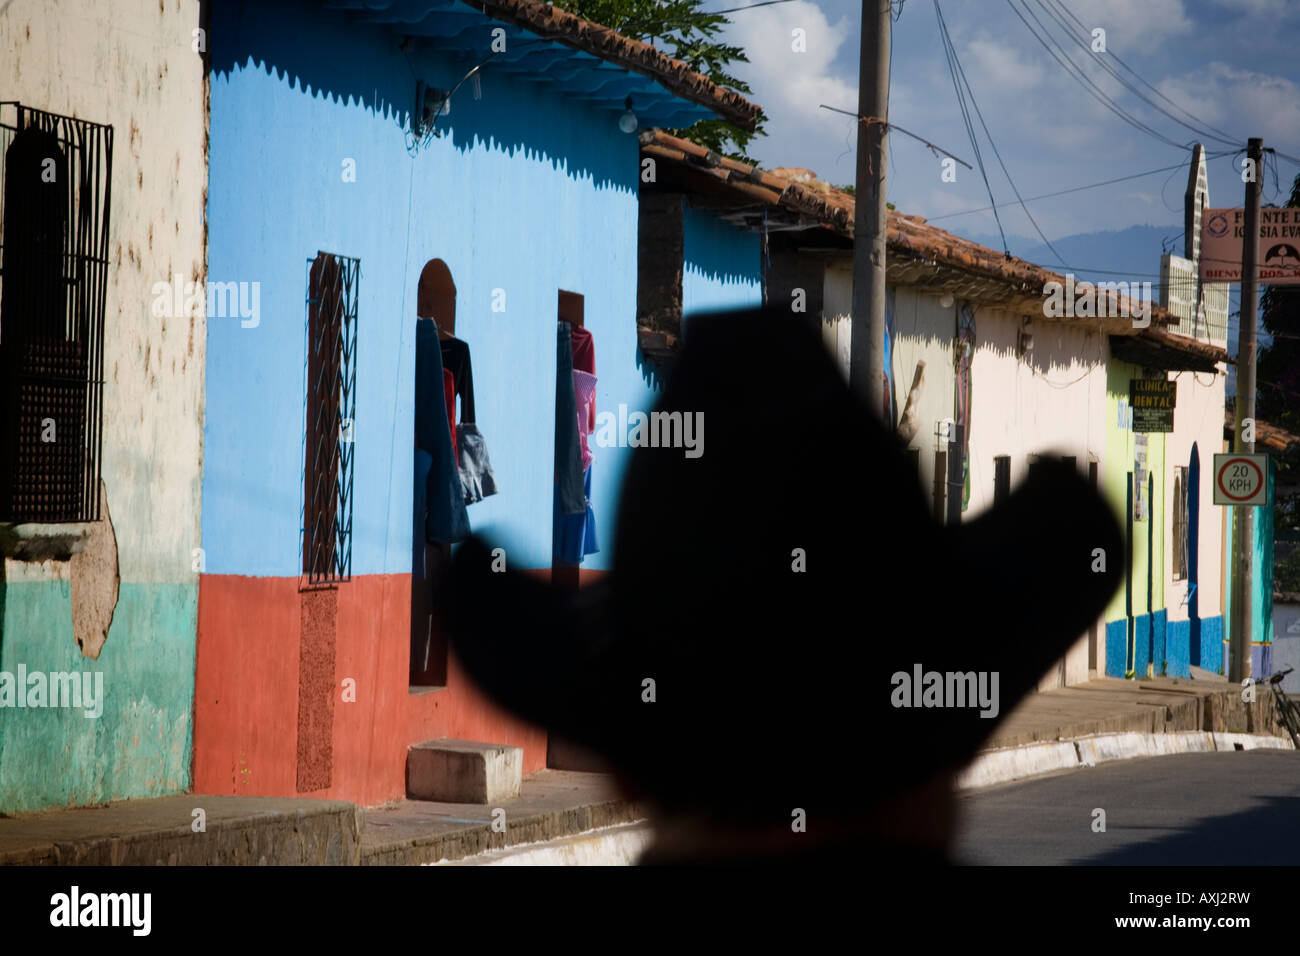 Cowboy hat silhouette contre bâtiments adobe Suchitoto El Salvador Banque D'Images